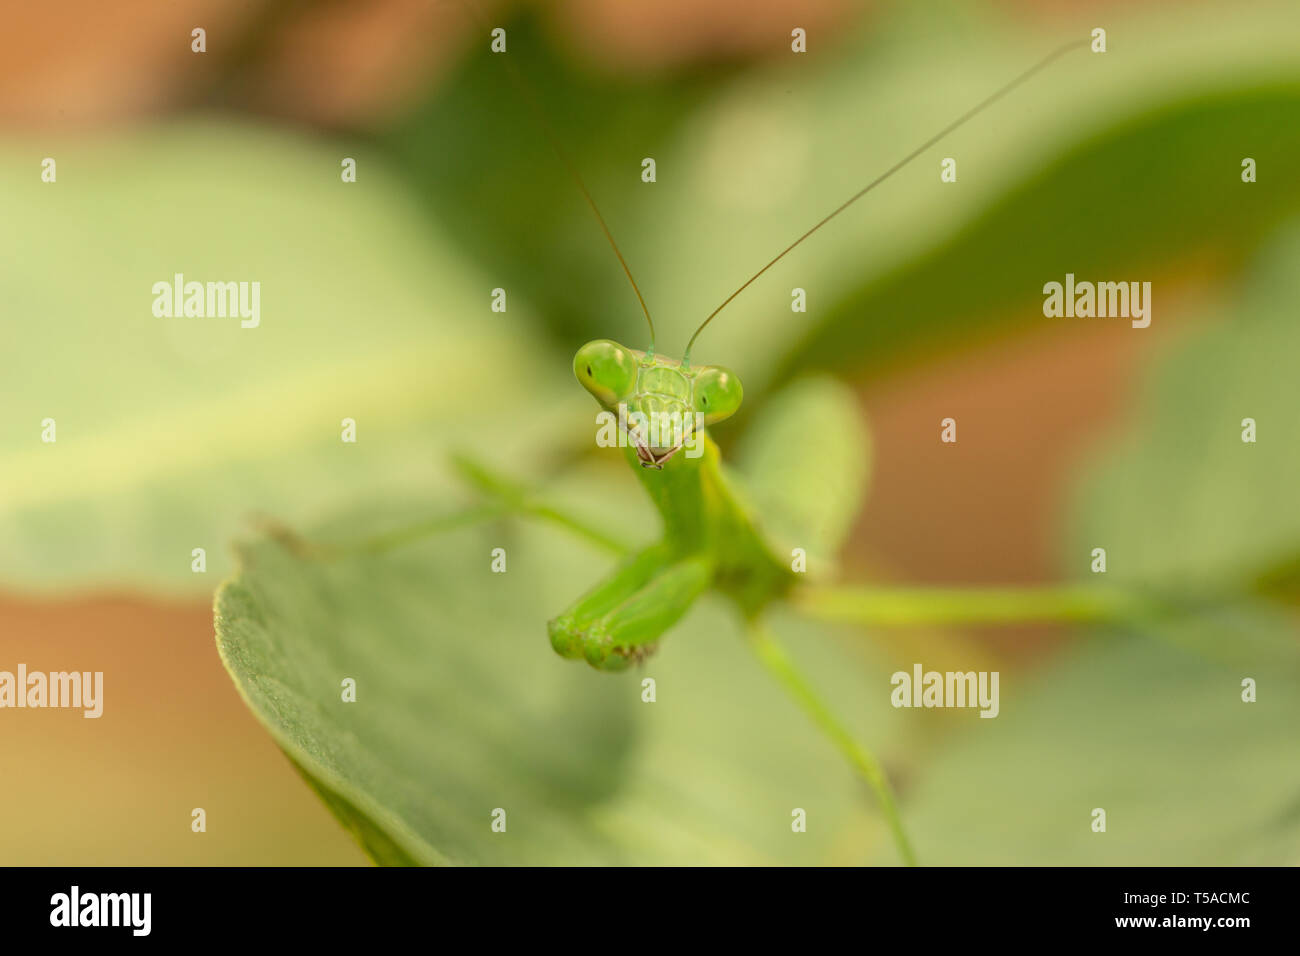 close up of praying mantis Stock Photo